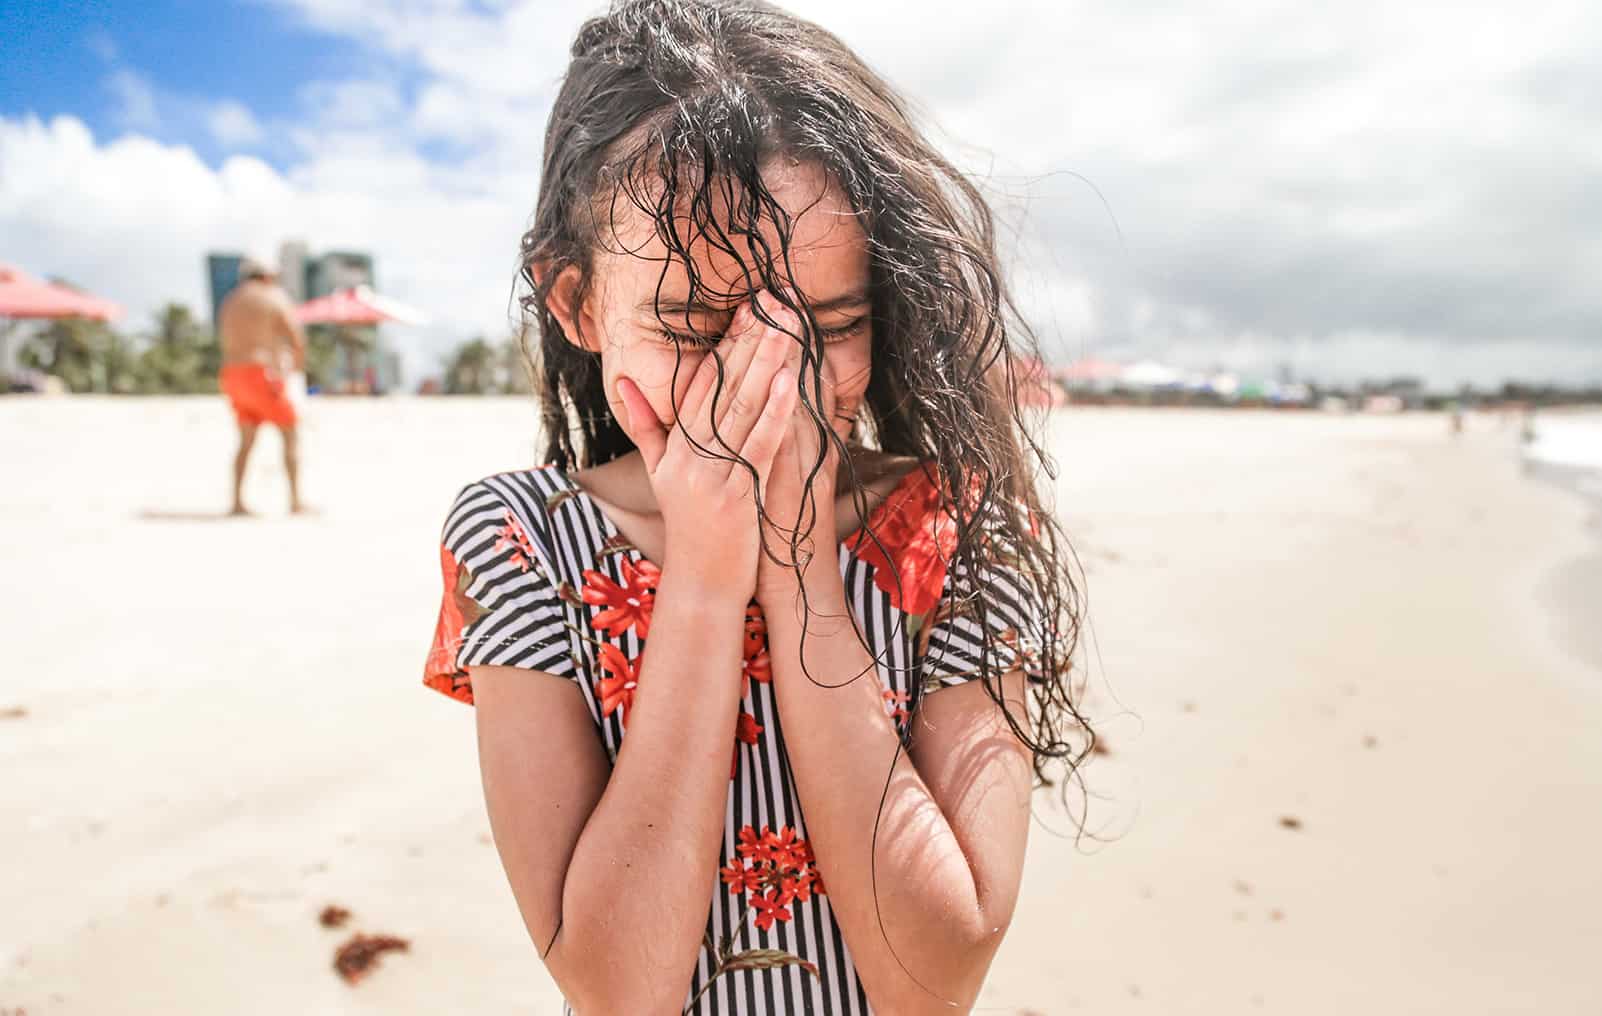 Very happy girl on a beach